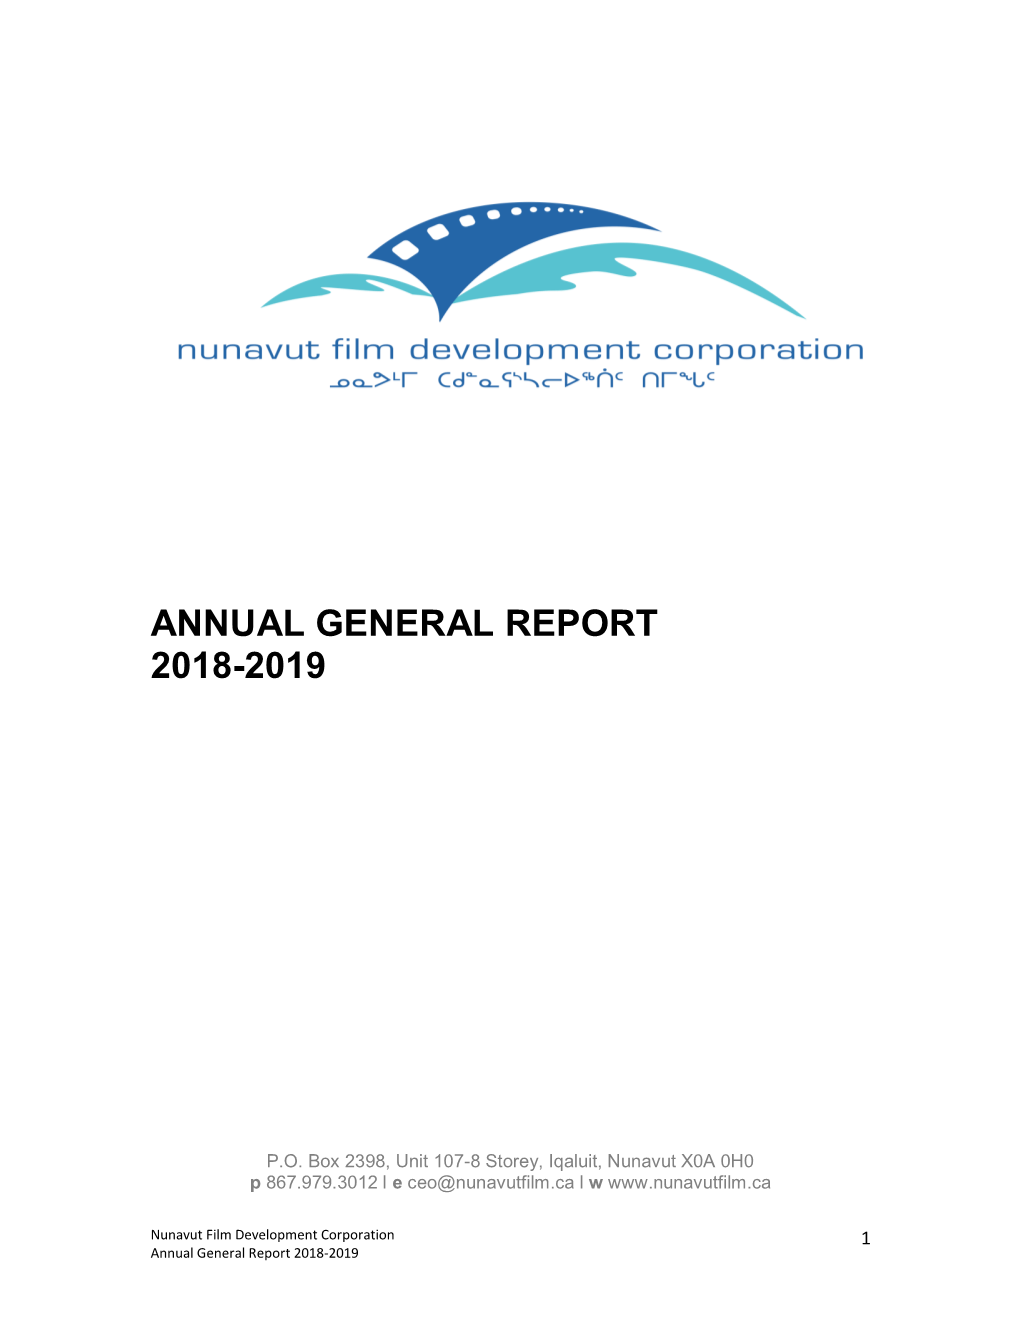 NFDC 18-19 Annual General Report